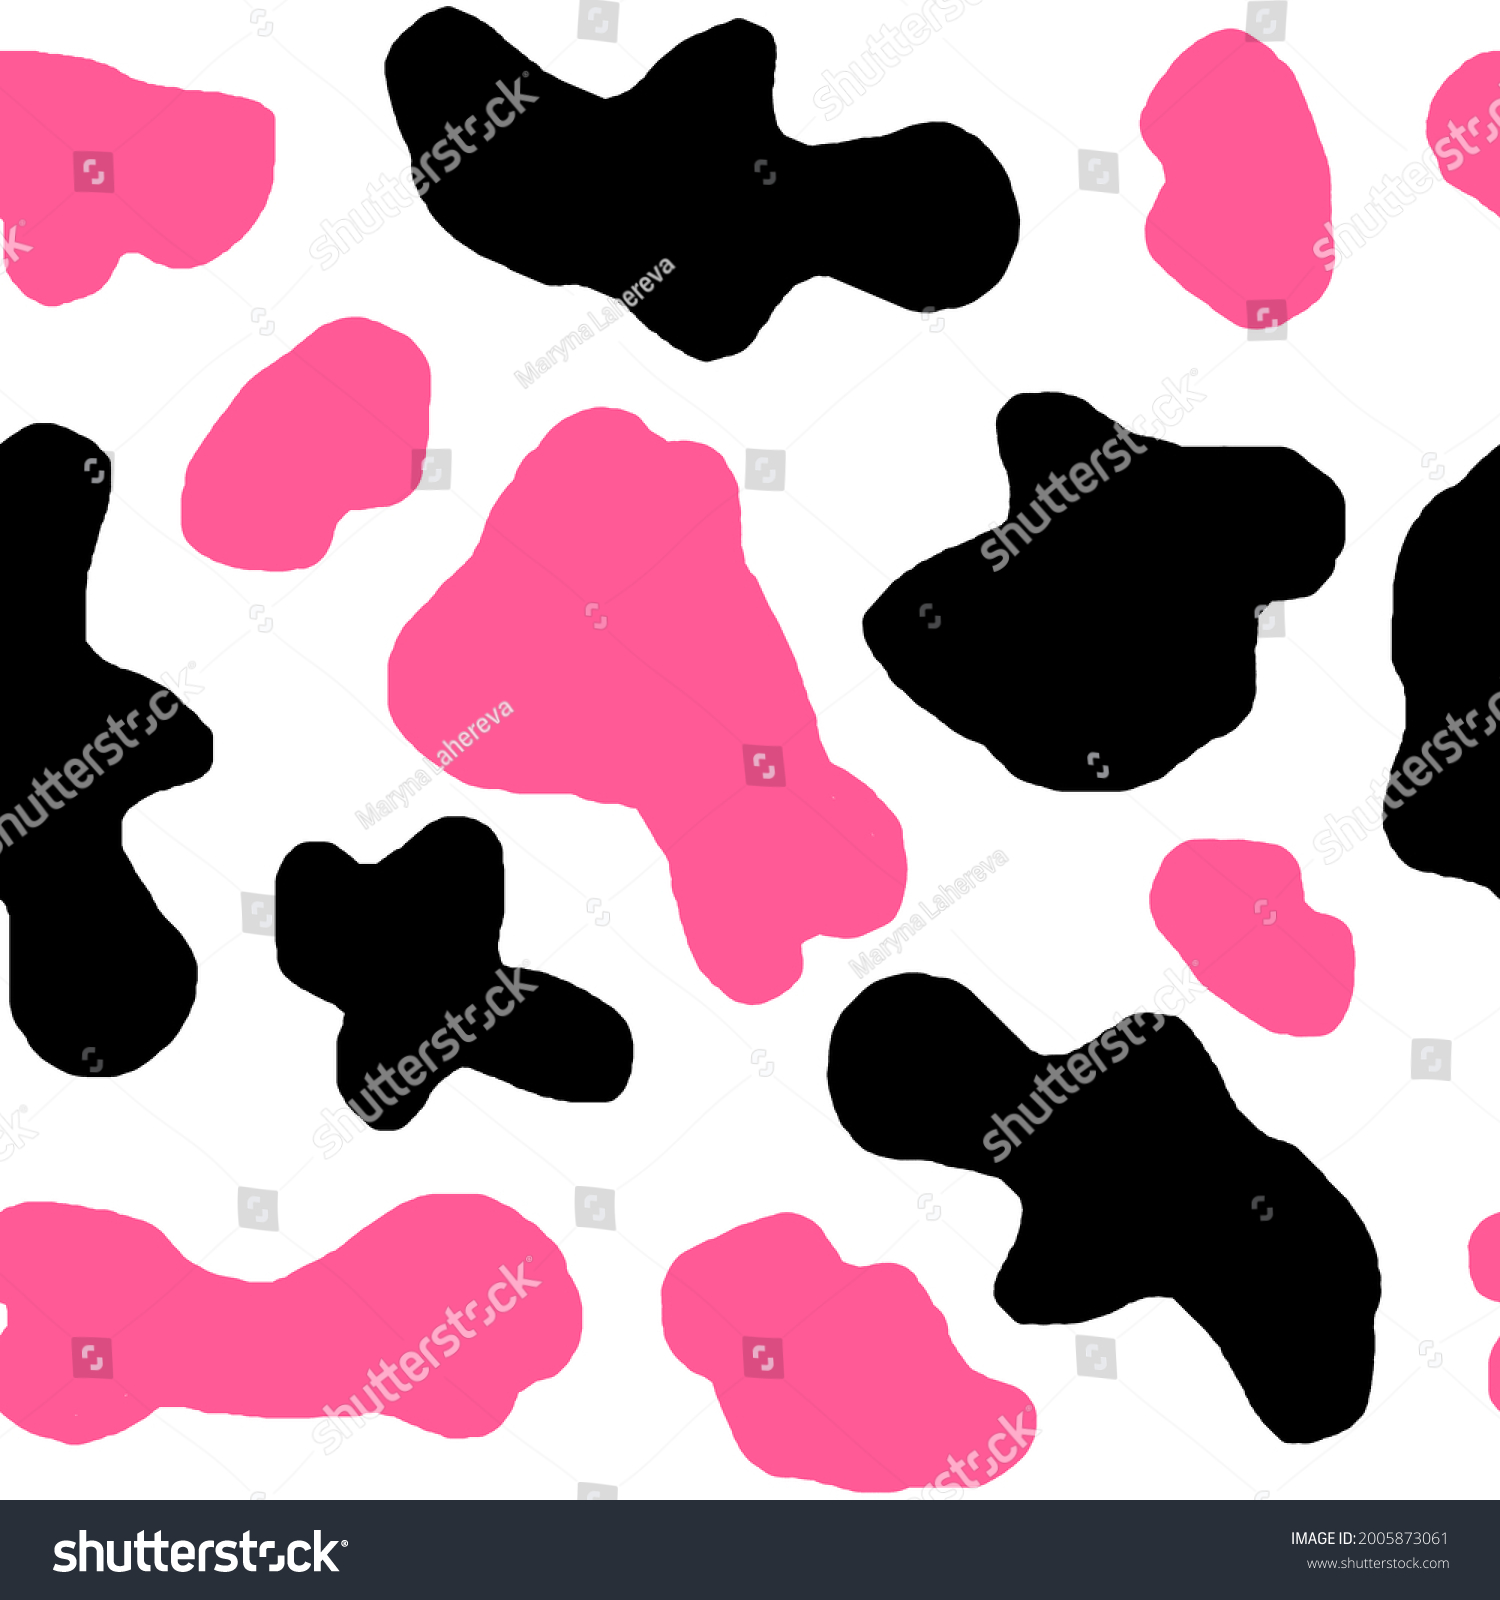 Cow Print Black or Pink